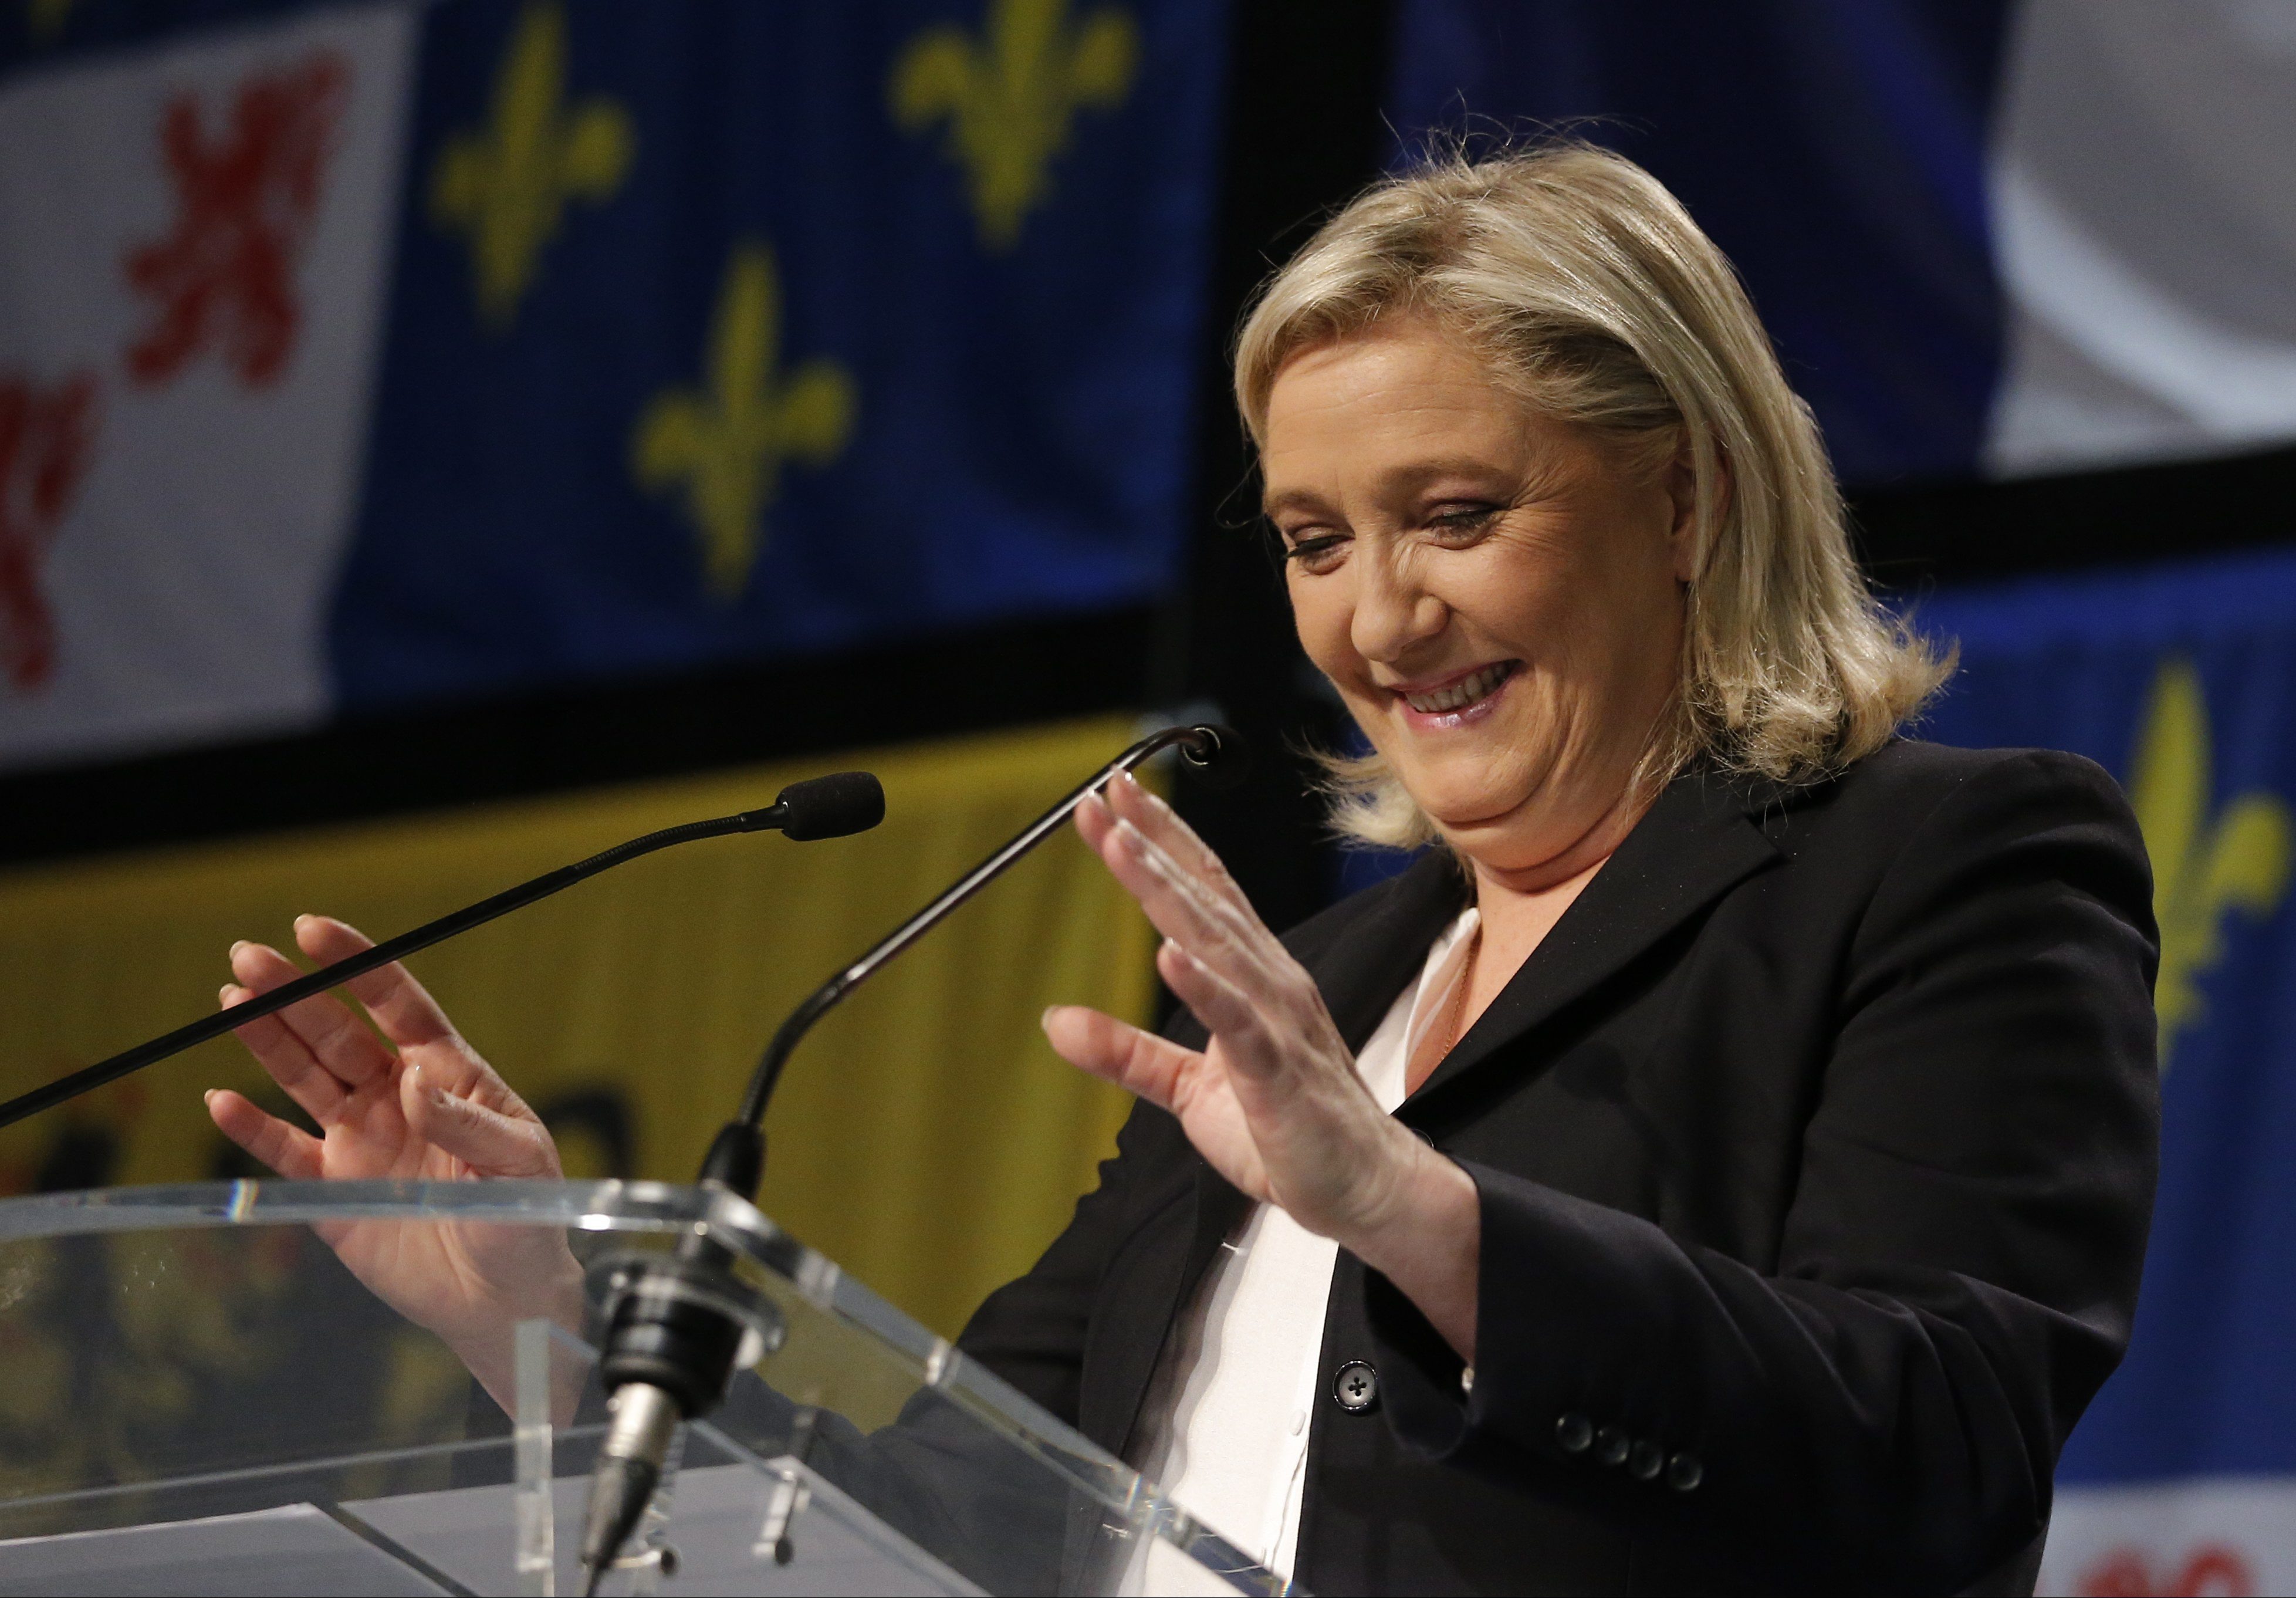 Succes istoric pentru extrema dreapta la alegerile regionale din Franta. Reactia fostului presedinte Nicolas Sarkozy